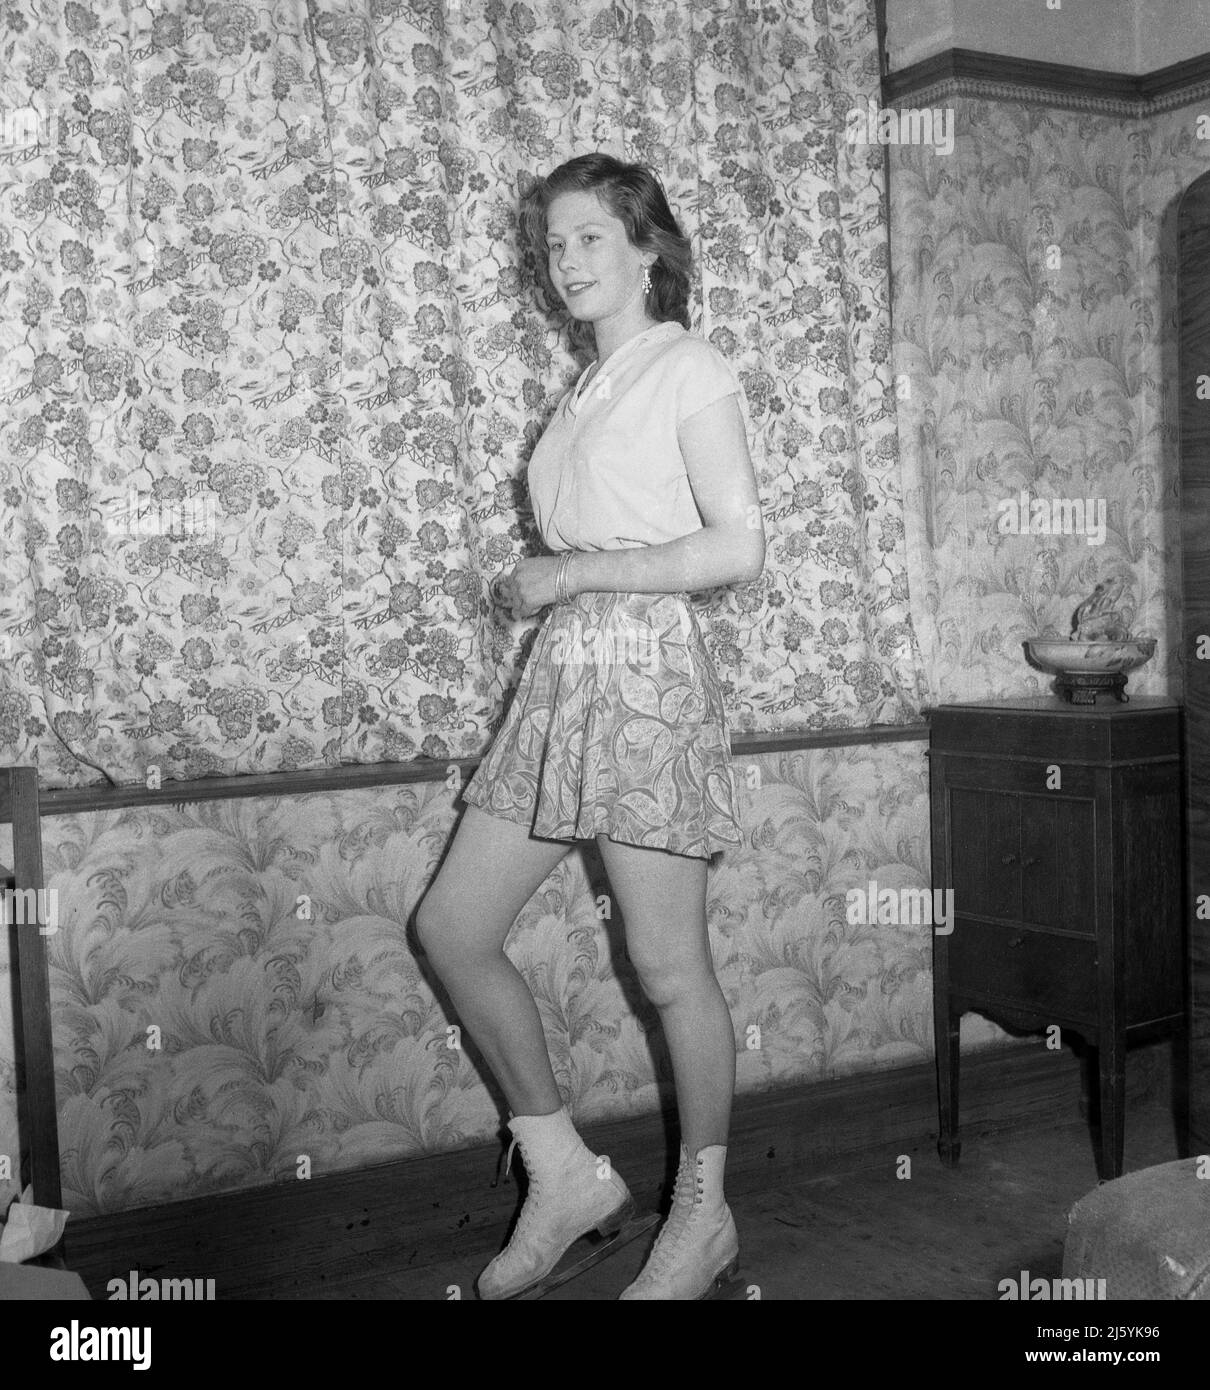 1961, historisch, eine junge Skaterin, die in einem vorderen Raum für ihr Foto in ihrem Eislauftop und Rock und Schlittschuhen stand, Stockport, England, Großbritannien. Ihr Blumenmuster Rock passt zu den Vorhängen! Stockfoto